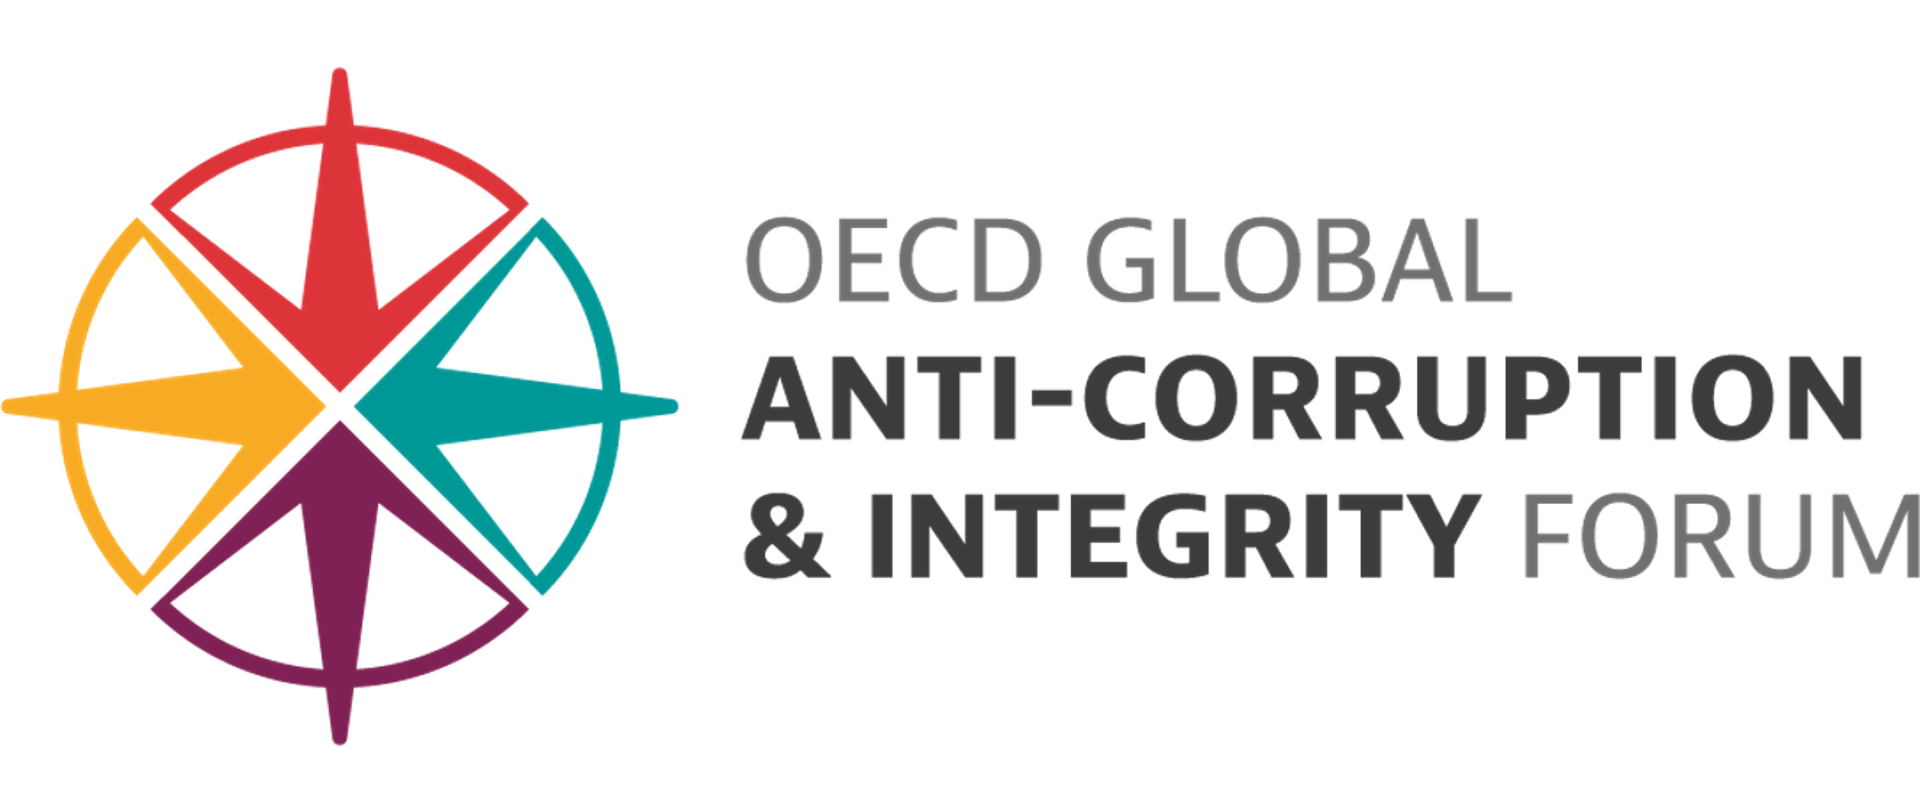 Logo w kształcie gwiazdy wpisanej w koło, w czterech kolorach: żółtym, fioletowym, turkusowym i czerwonym. Po prawej stronie napis: OECD GLOBAL Anti-corruption & Integrity Forum.